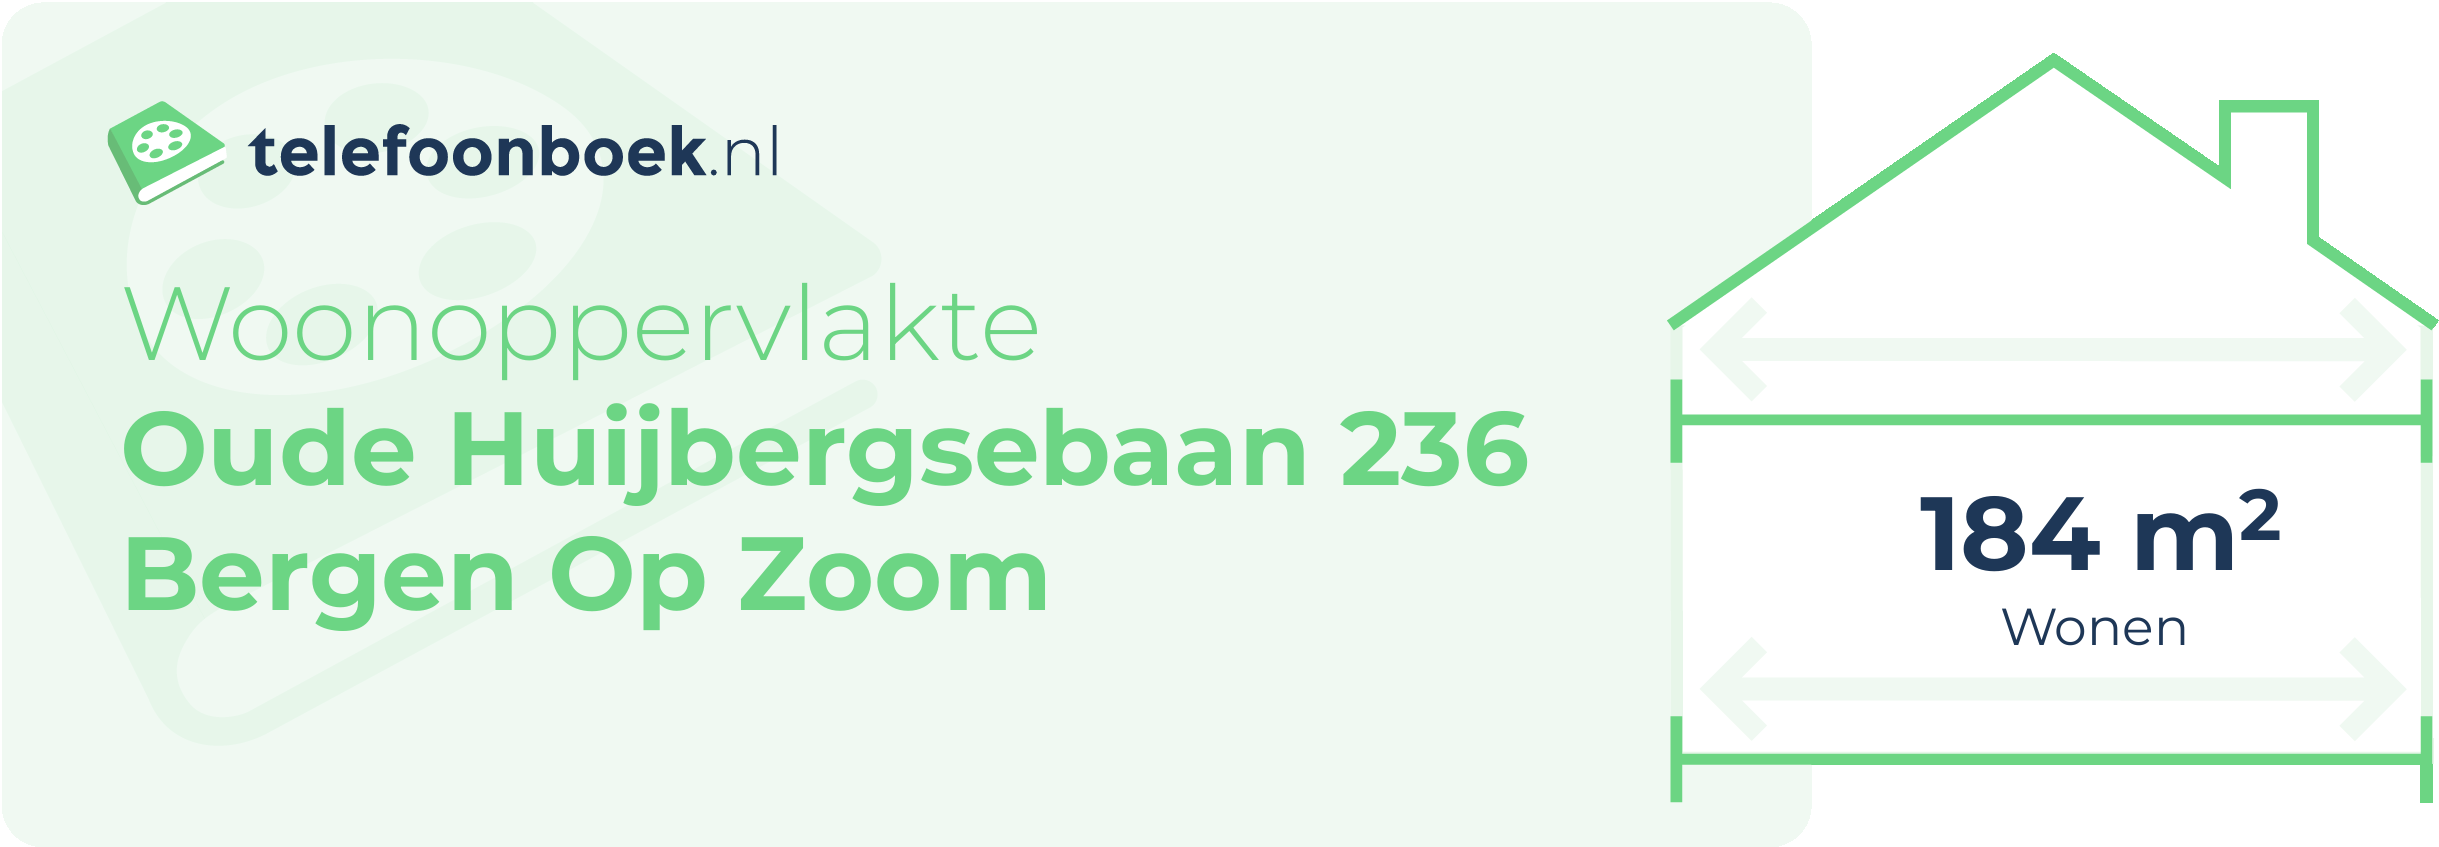 Woonoppervlakte Oude Huijbergsebaan 236 Bergen Op Zoom